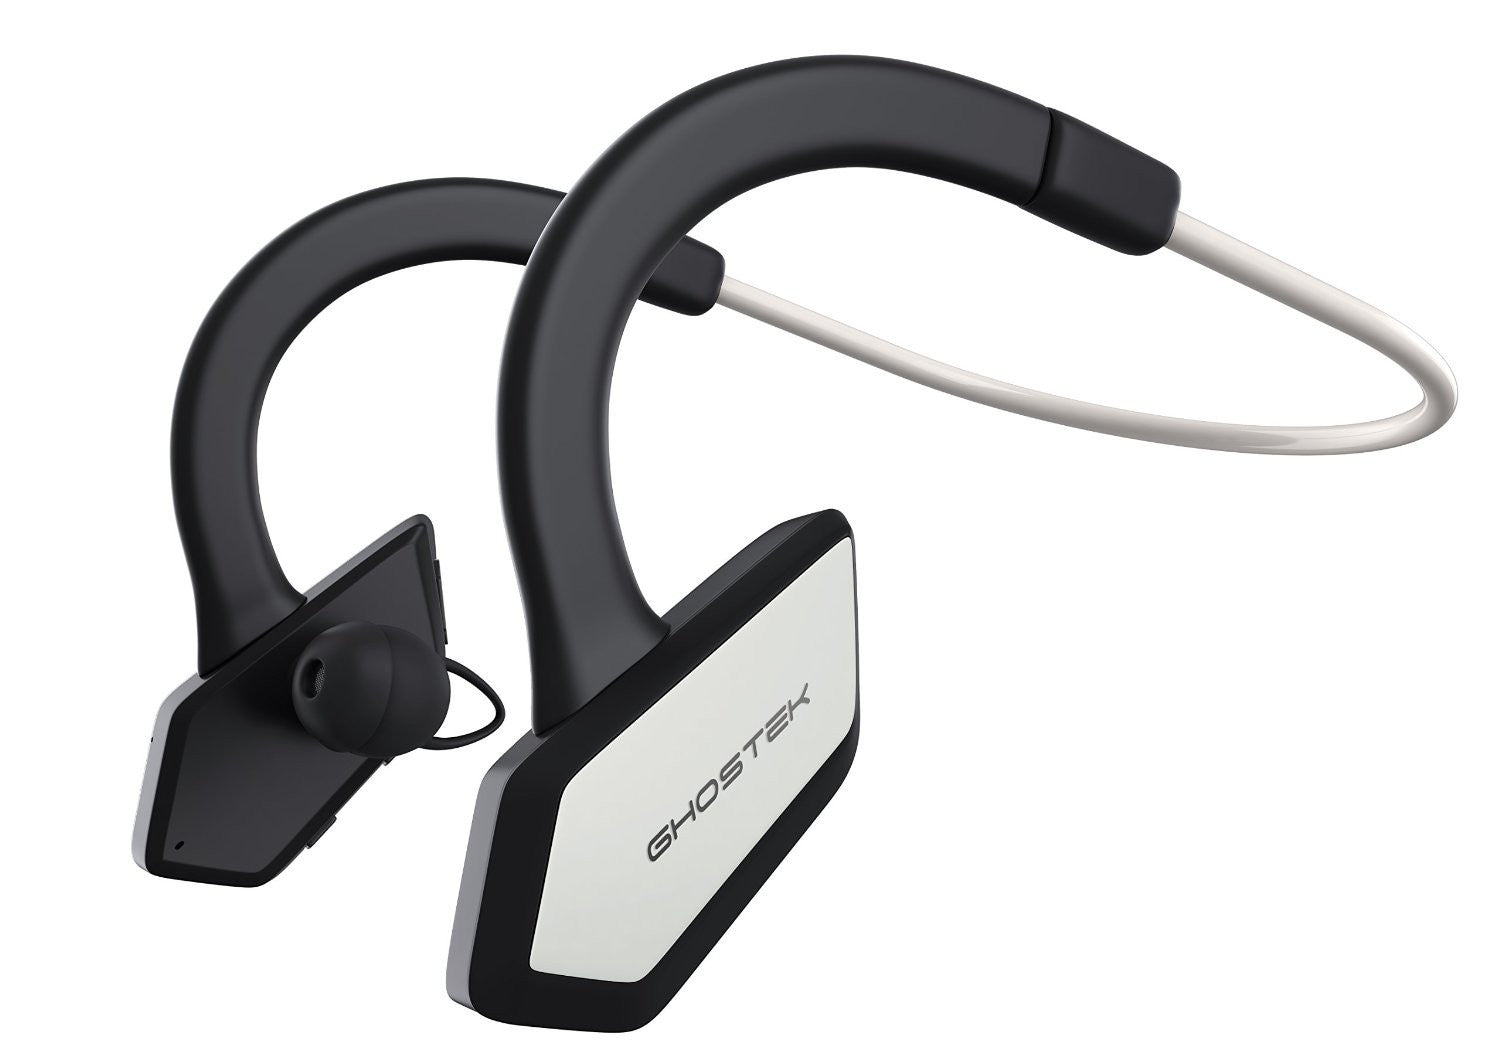 Headphones Bluetooth Ghostek Earblades White/Black Sweatproof Bluetooth4.1 Headphones WaterResistant (Color in image: white / black)